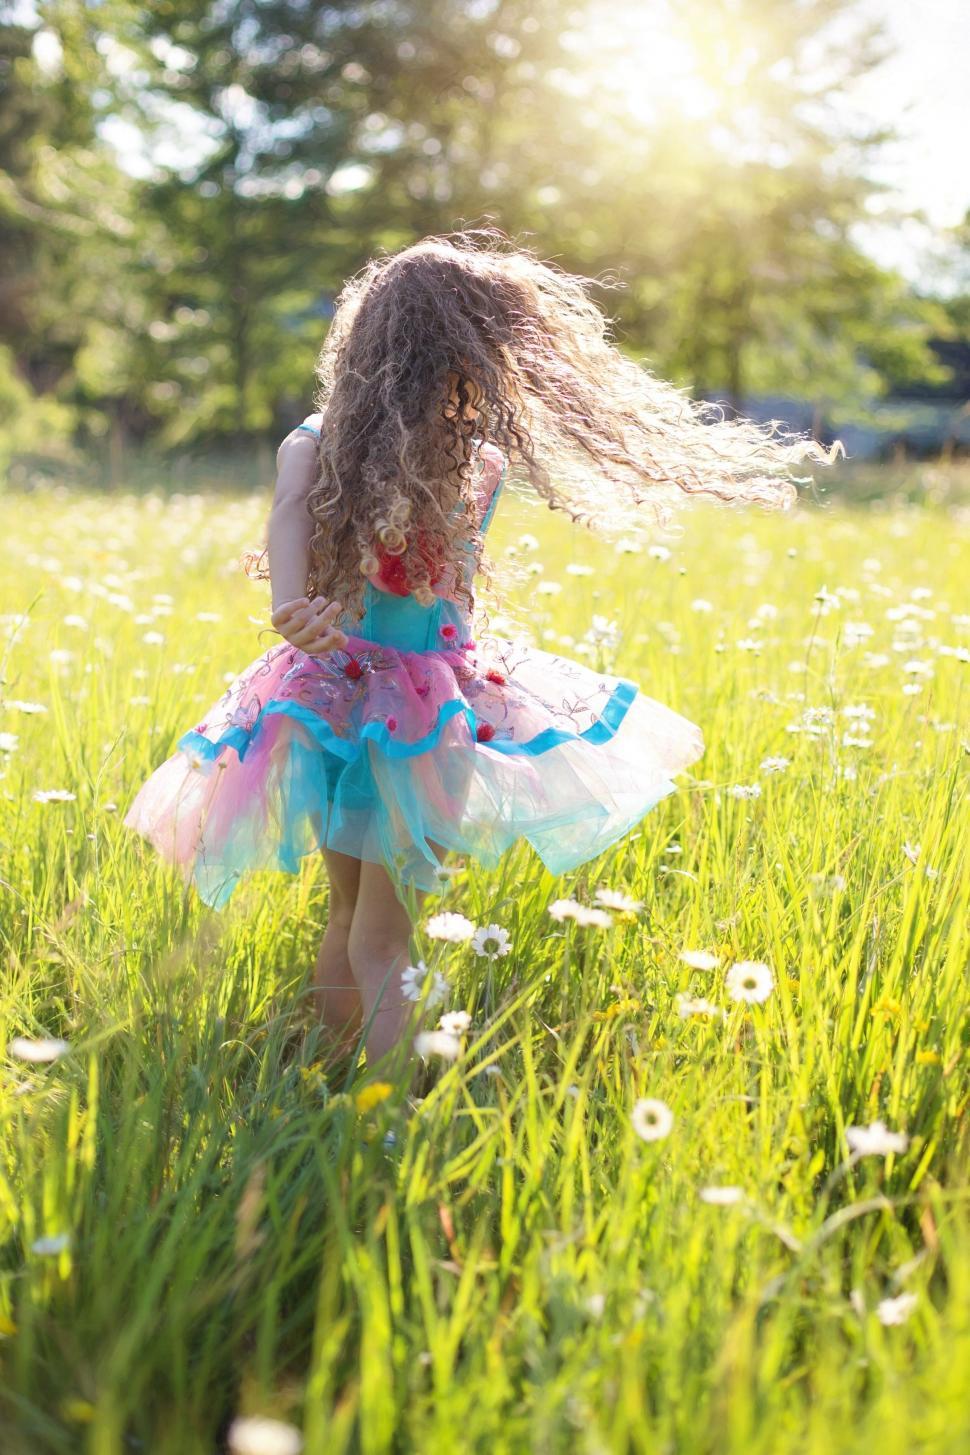 Free Image of Little Girl dancing in flower field  